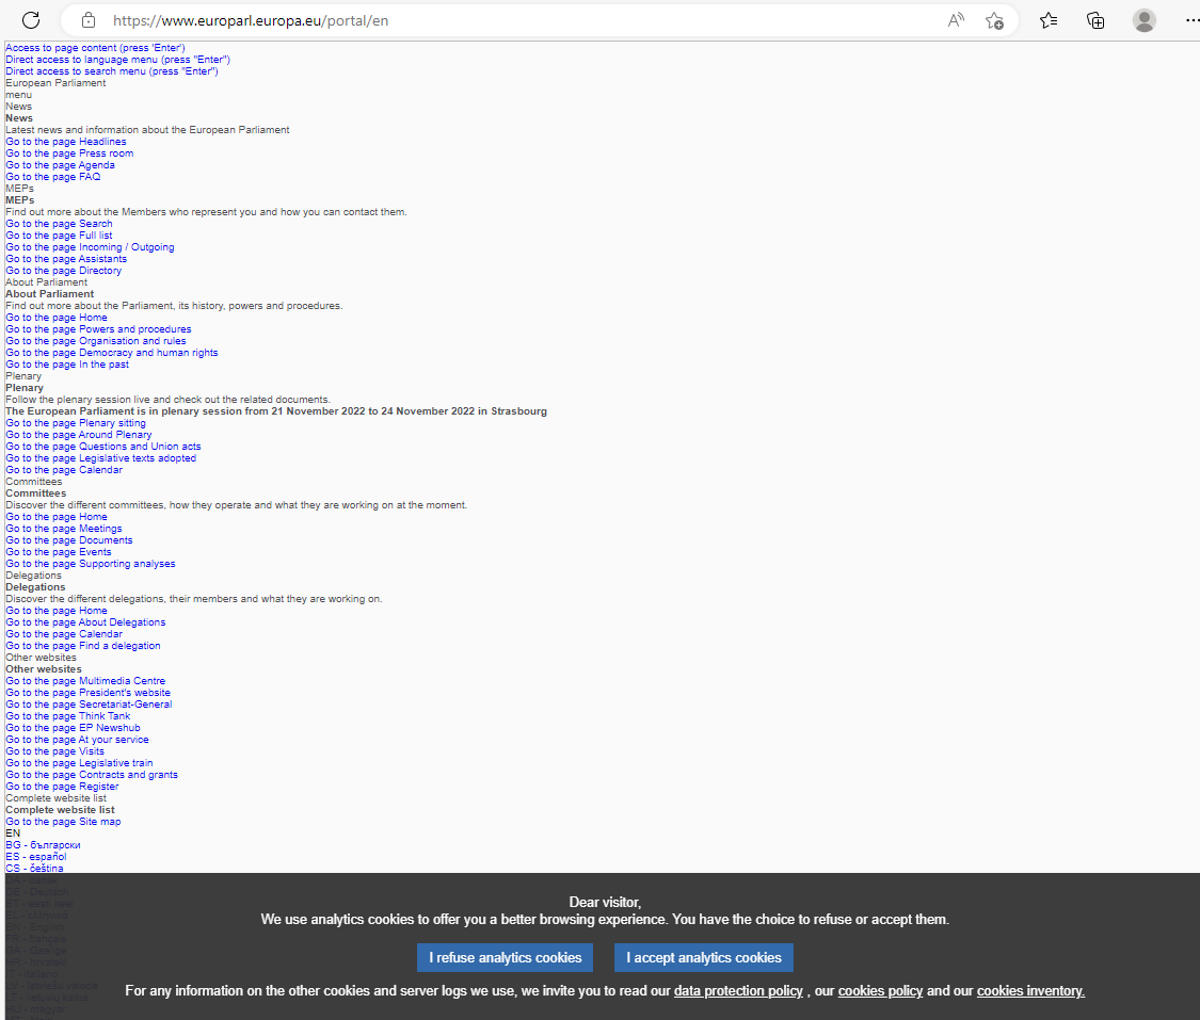 Attacco Ddos degli hacker pro-russi di Killnet al sito web del Parlamento europeo